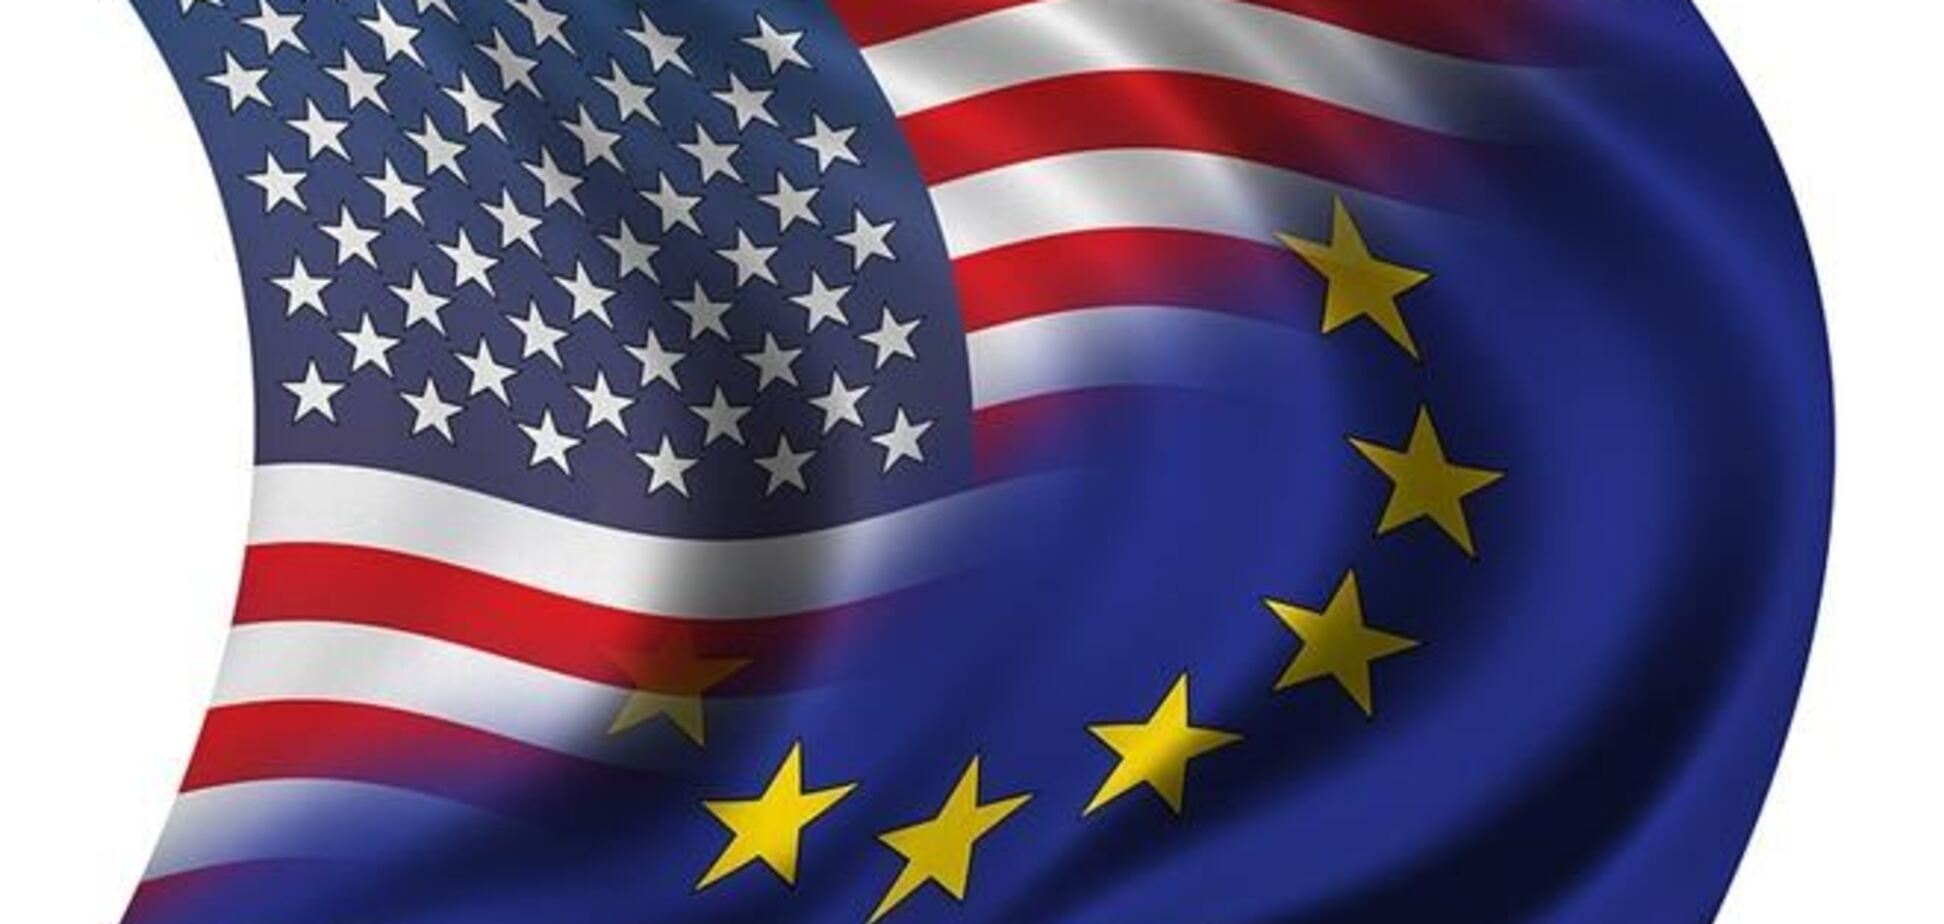 ЕС и США возобновили переговоры о ЗСТ